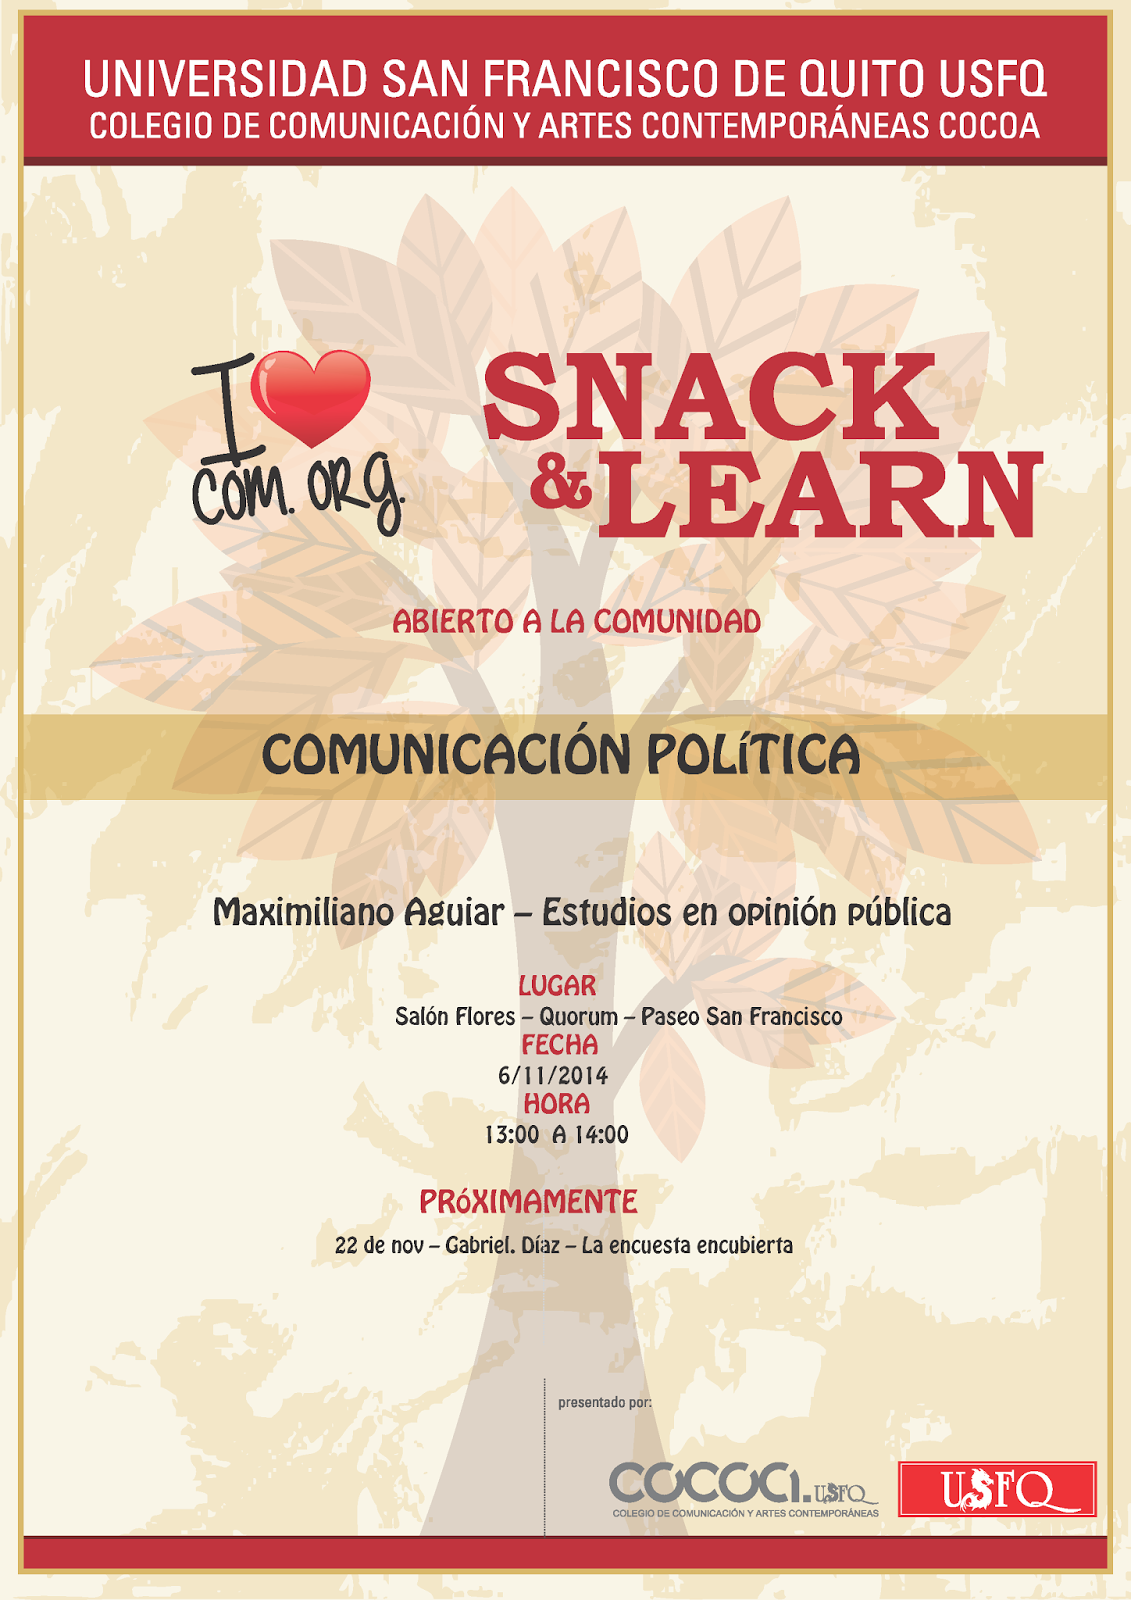 Cuarta conferencia de Snack & Learn: "Estudios en opinión pública". 06 noviembre, 13h00, Salón Azul de la USFQ